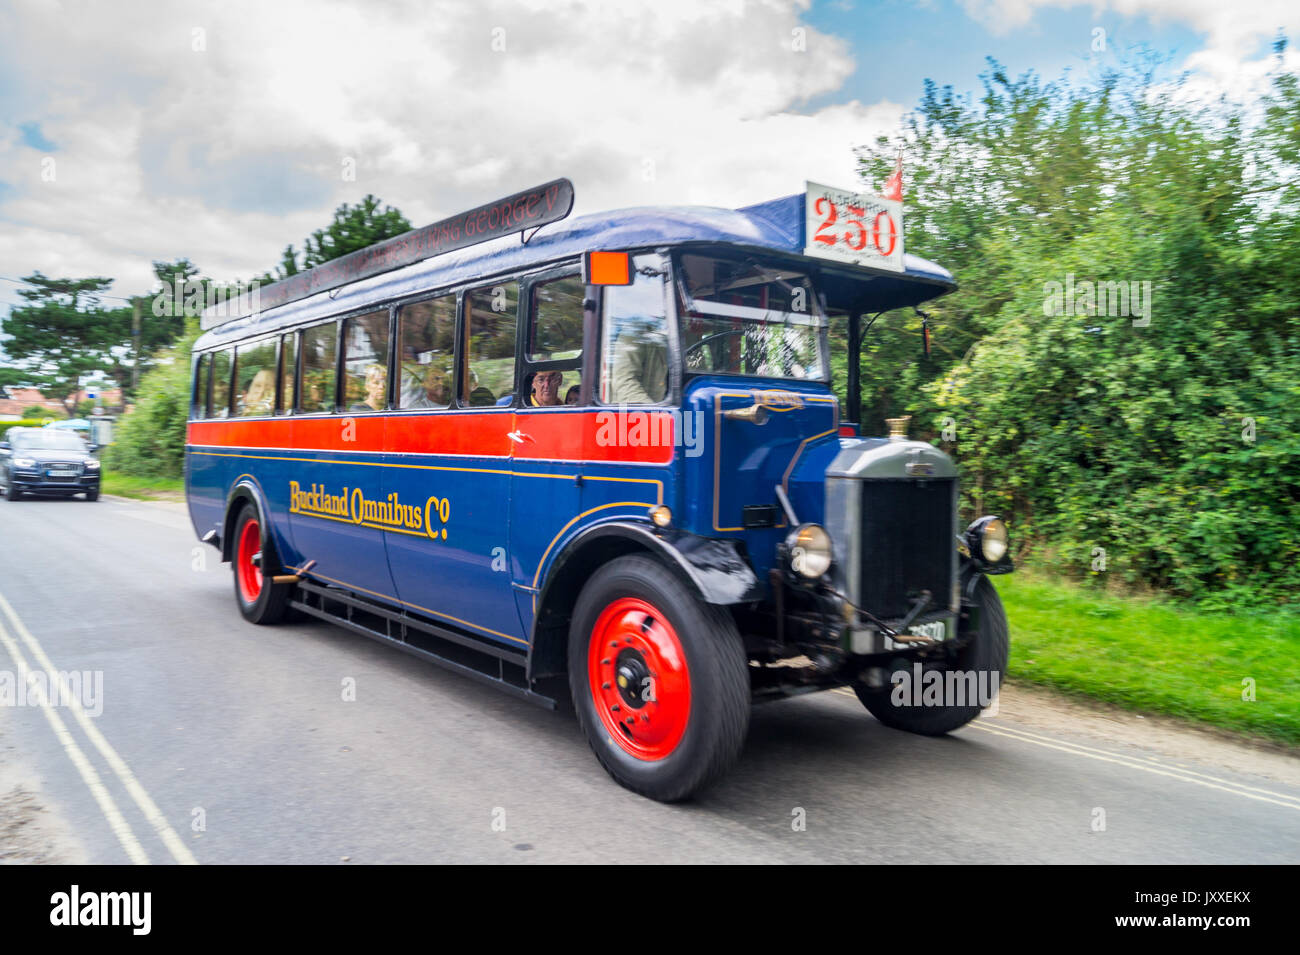 "Ermintrude', 1929 Dennis ES 29 unique siège decker vintage omnibus, transportant les touristes, avec des voitures modernes en attente derrière, Aldeburgh, Essex, Angleterre Banque D'Images